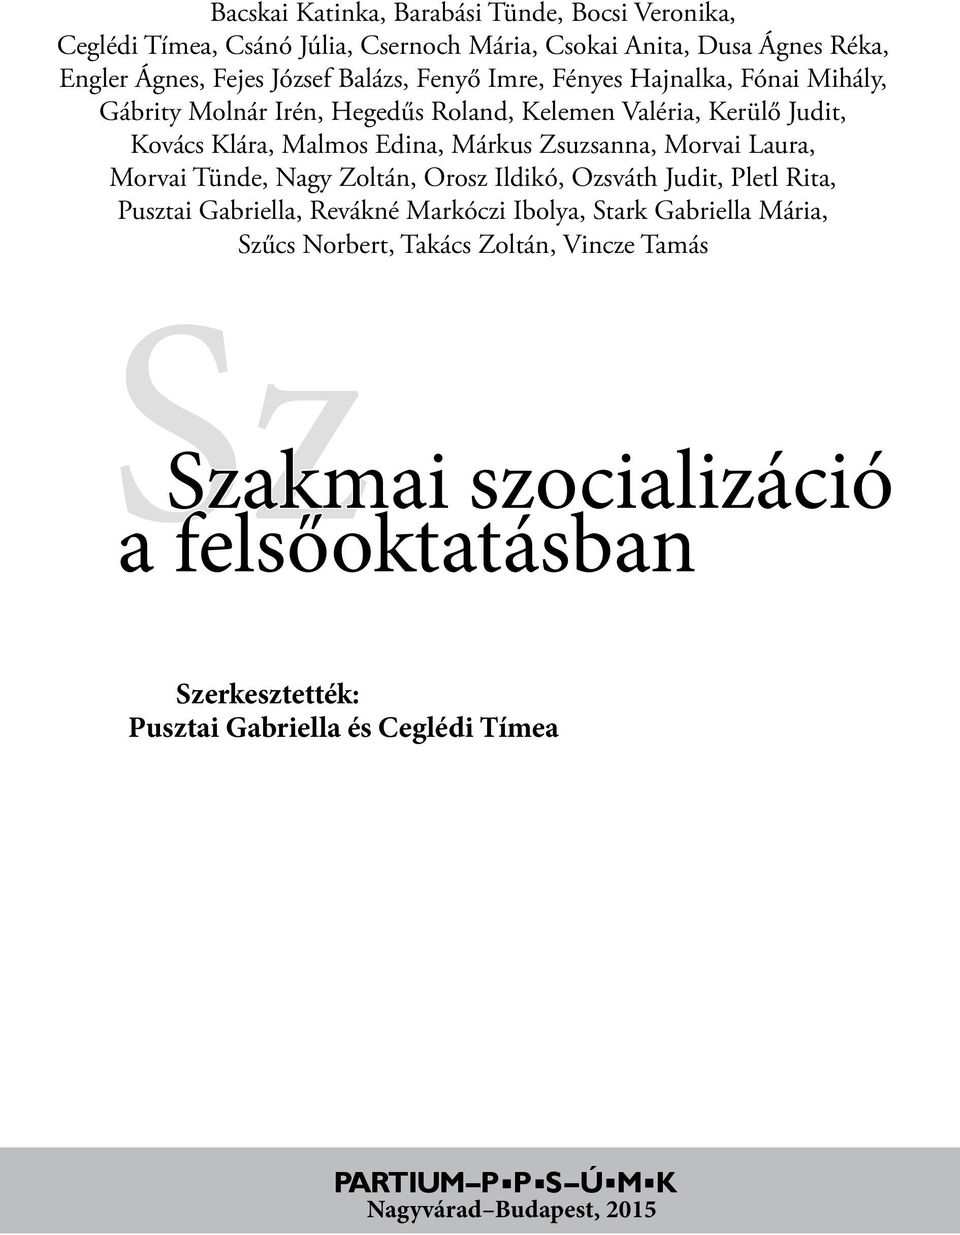 Szakmai szocializáció a felsőoktatásban. Szerkesztették: Pusztai Gabriella  és Ceglédi Tímea - PDF Free Download